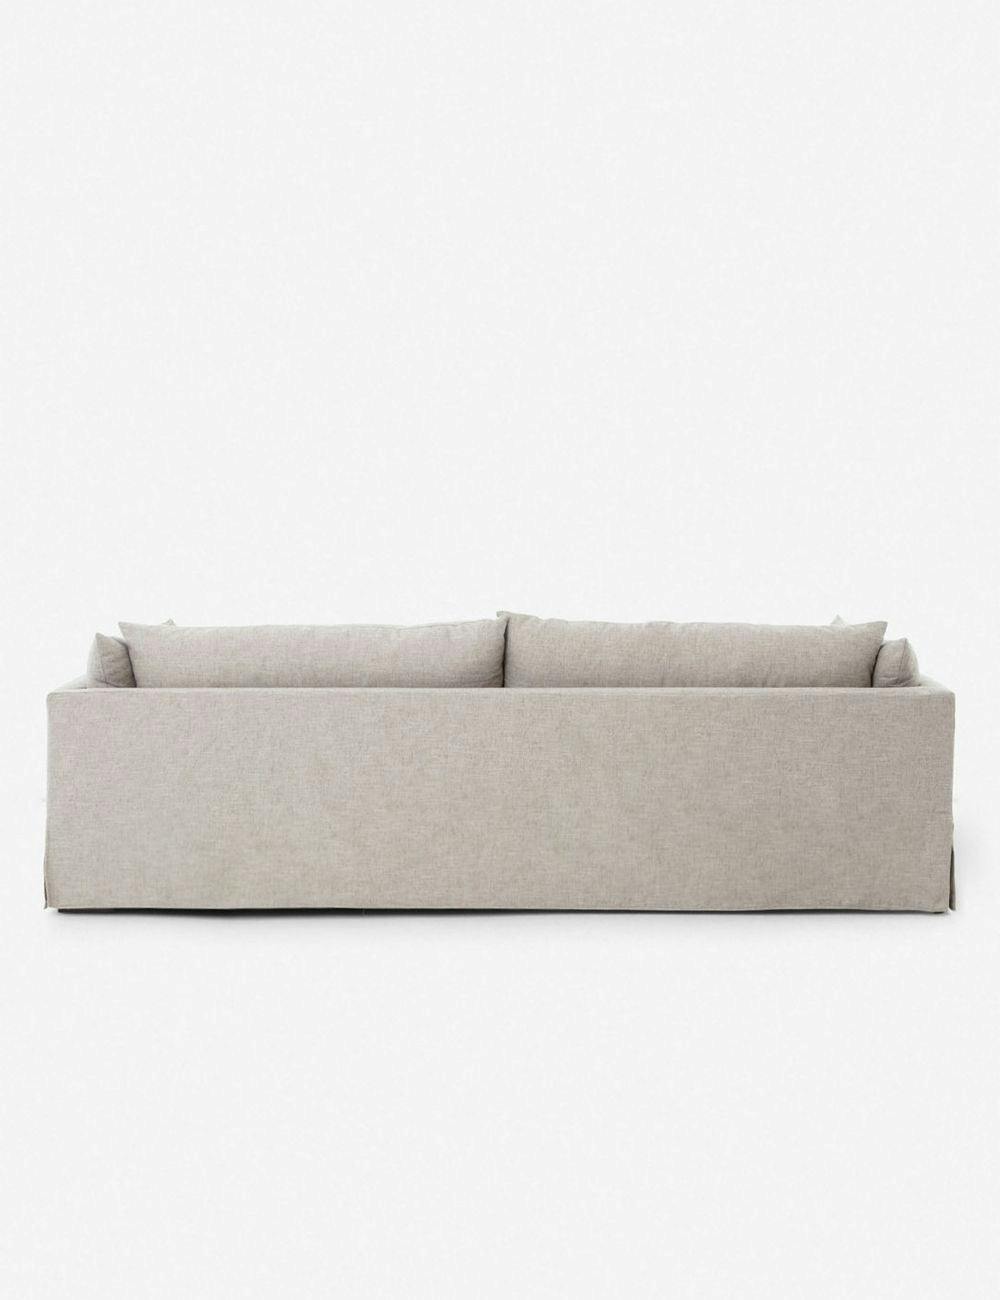 Arlen Slipcover Sofa - Light Gray / 90"W